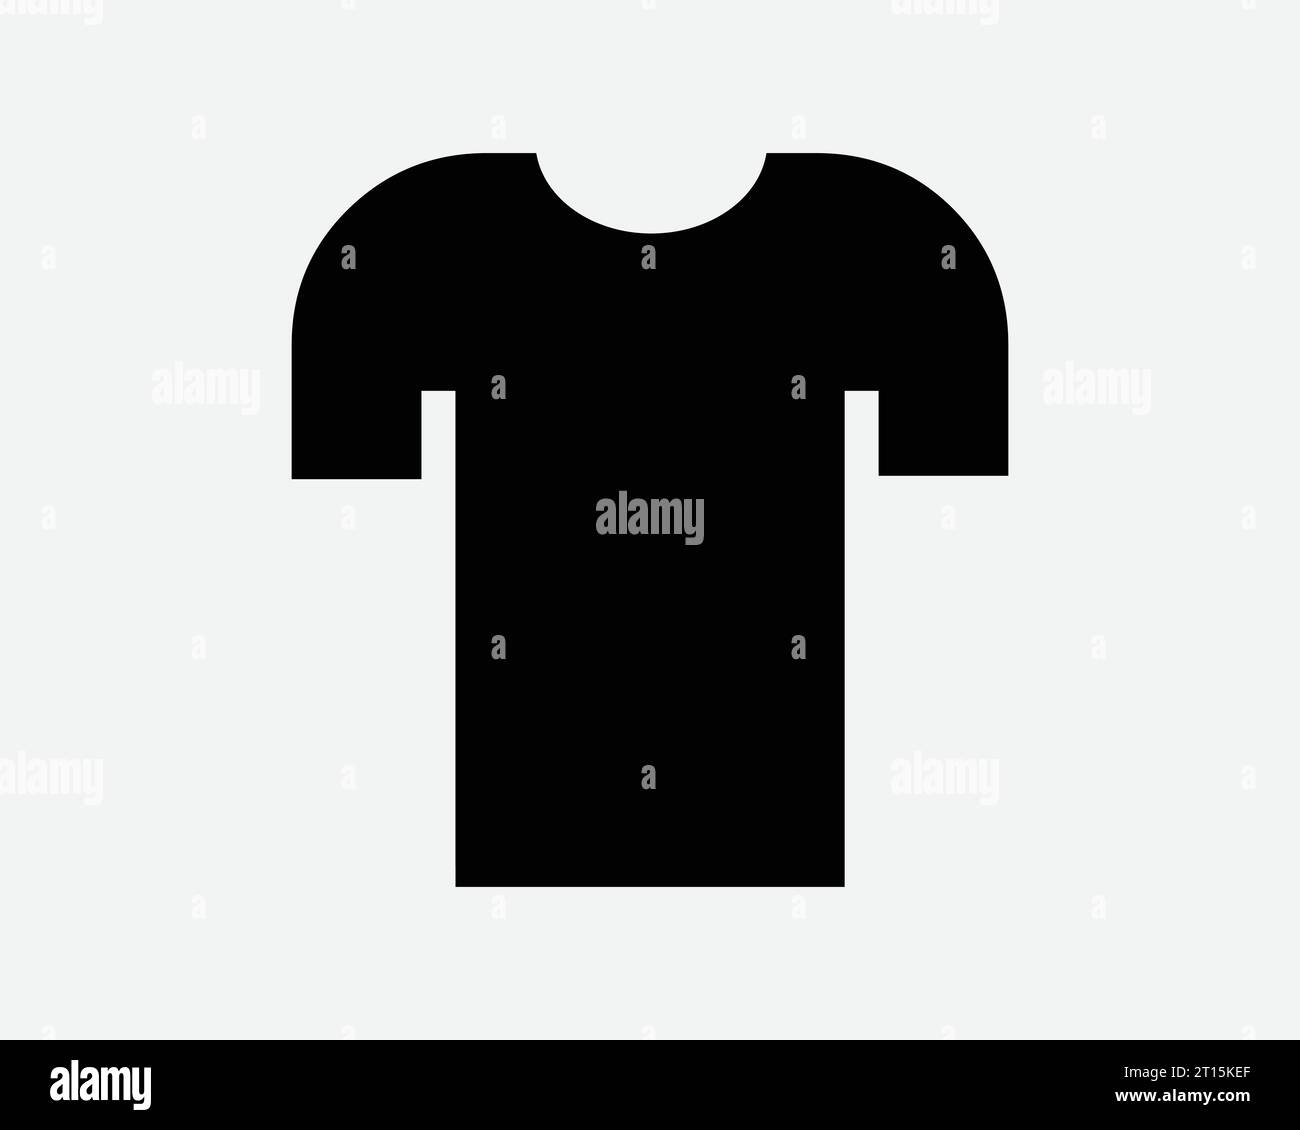 Chemise Plain simple T shirt Tee Design Fashion Retail Store T-shirt manches courtes vêtements textile Noir blanc forme icône signe symbole EPS Vector Illustration de Vecteur